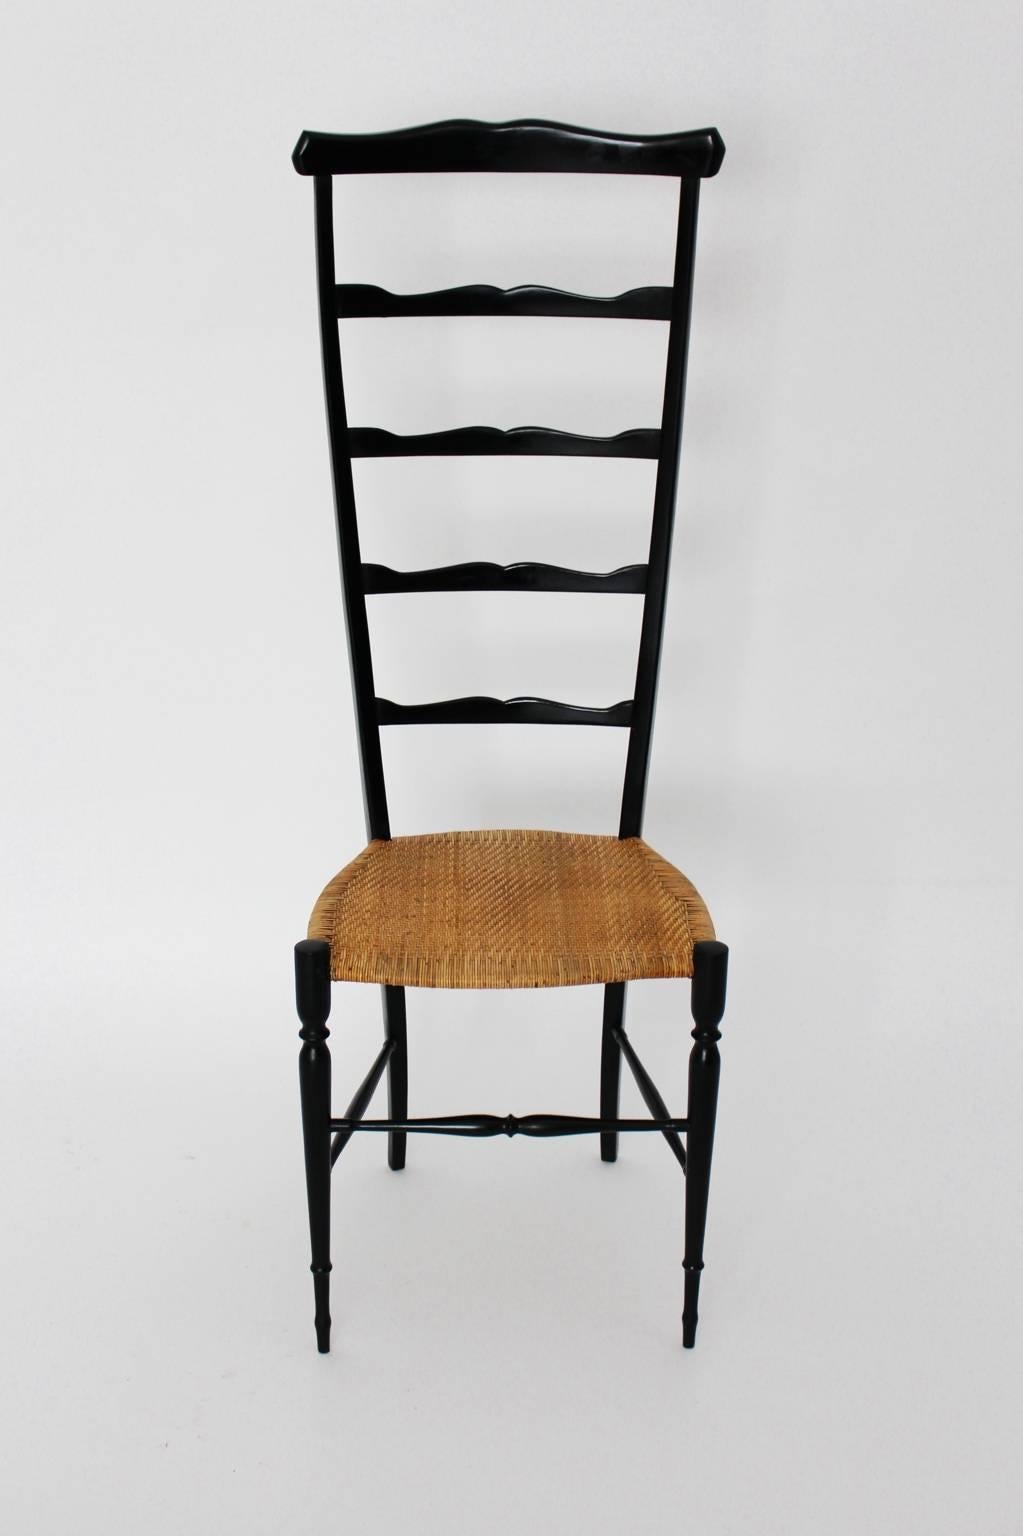 Mid Century Modern Side Chair von Chiavari Italien 1940er Jahre aus Buche und Raffia.
Dieser leichte Stuhl ist nach dem Ort in Italien benannt, an dem er hergestellt wurde. Der Entwurf ähnelt dem Superleggera Chair von Gio Ponti.
Der elegante